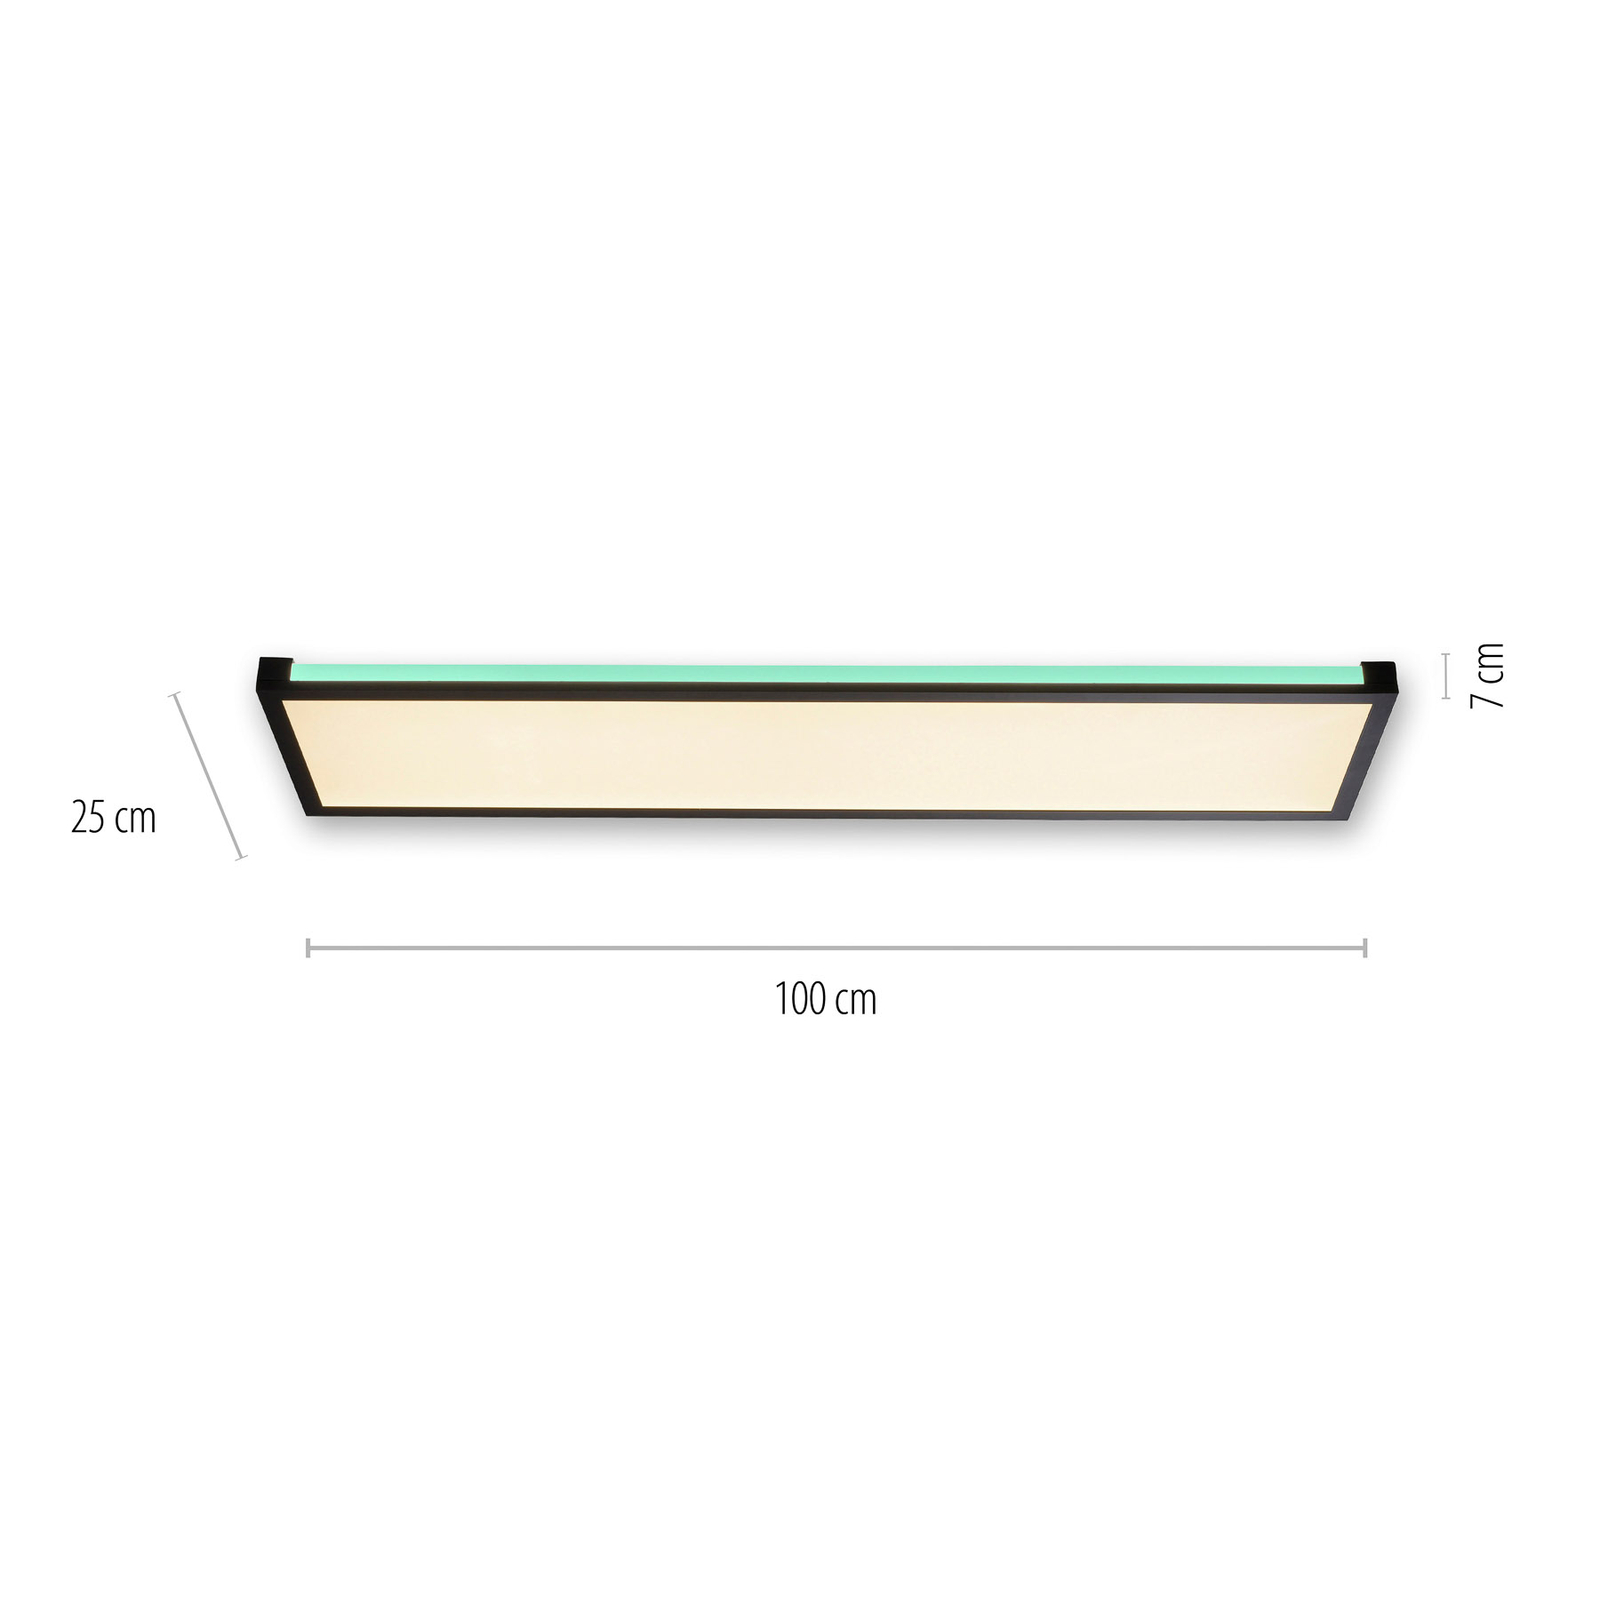 Plafoniera LED Mario 100x25cm, dimming, RGBW